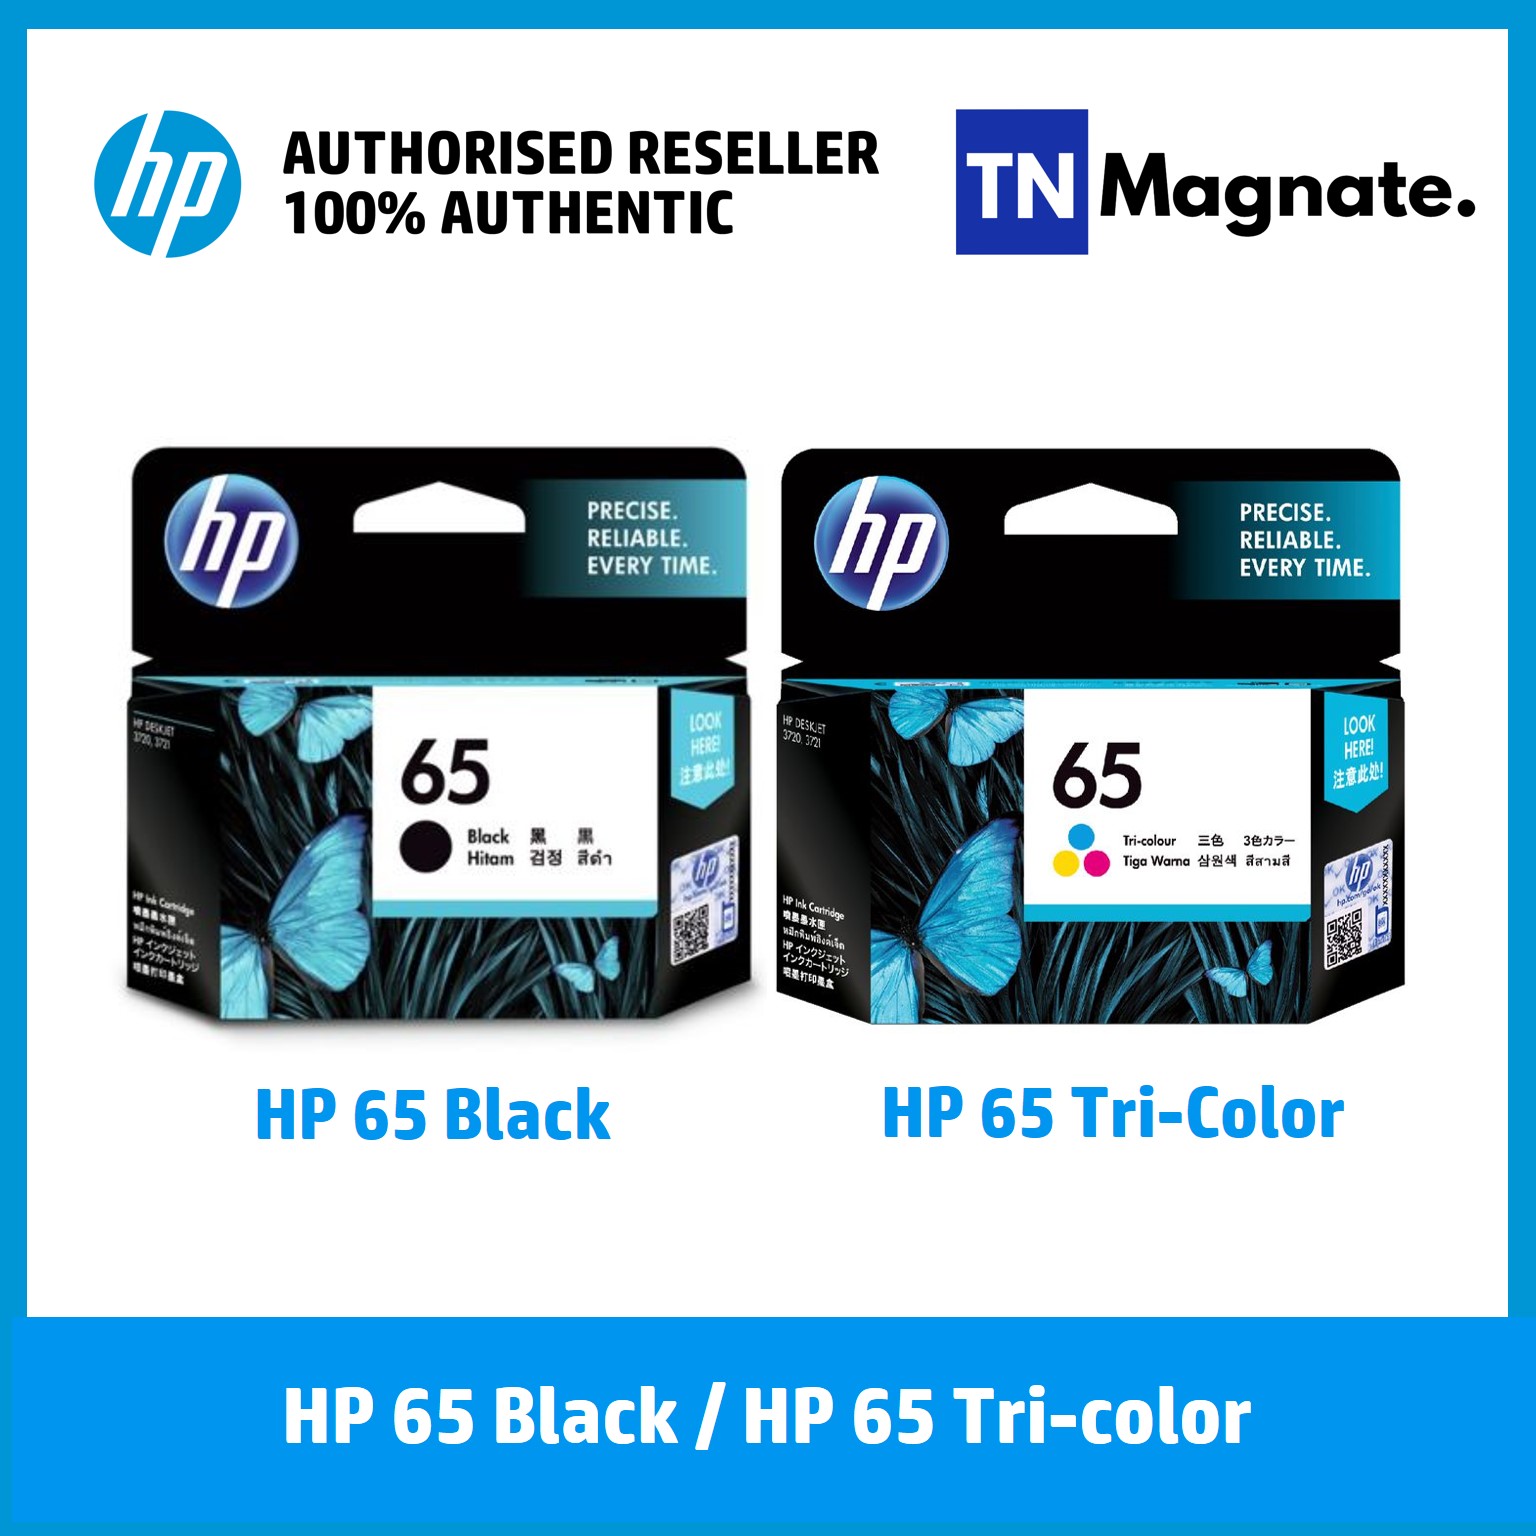 [หมึกพิมพ์อิงค์เจ็ท] HP 65 INK BLACK / HP 65 INK TRICOLOR - เลือก 1 กล่อง